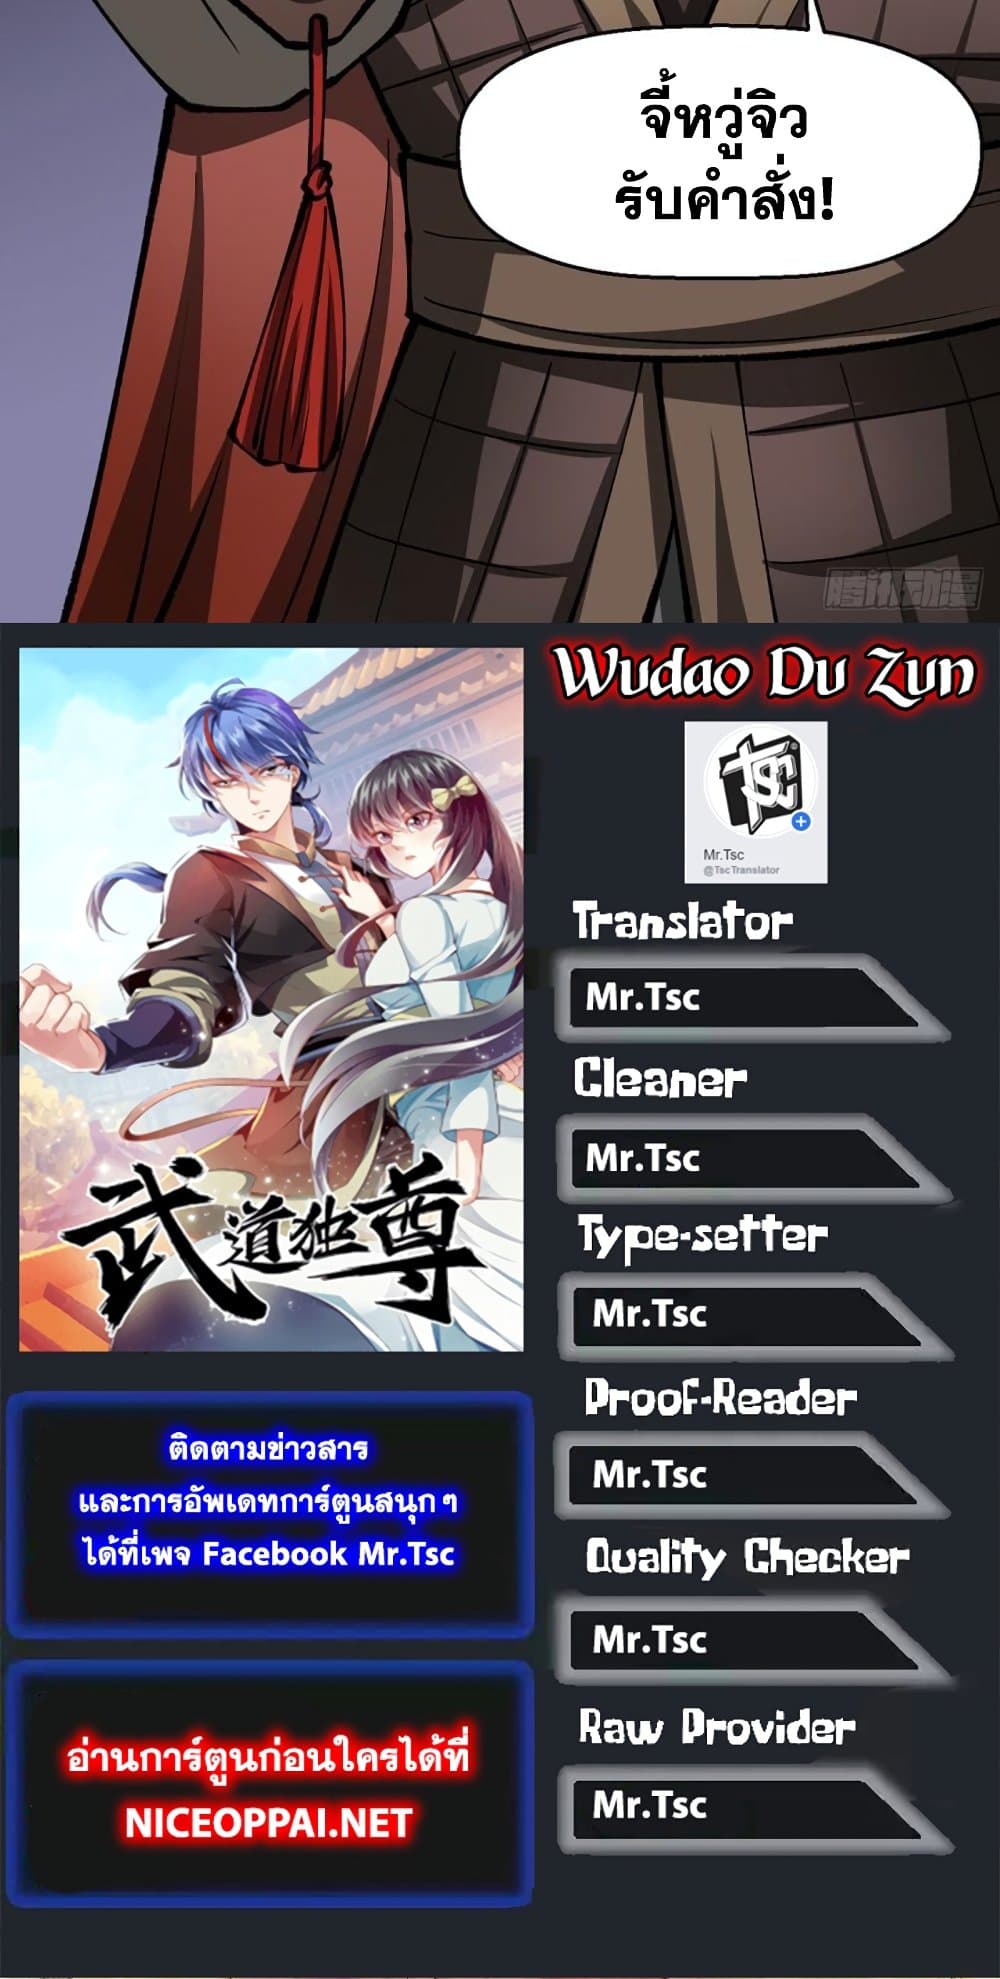 WuDao Du Zun 472-472